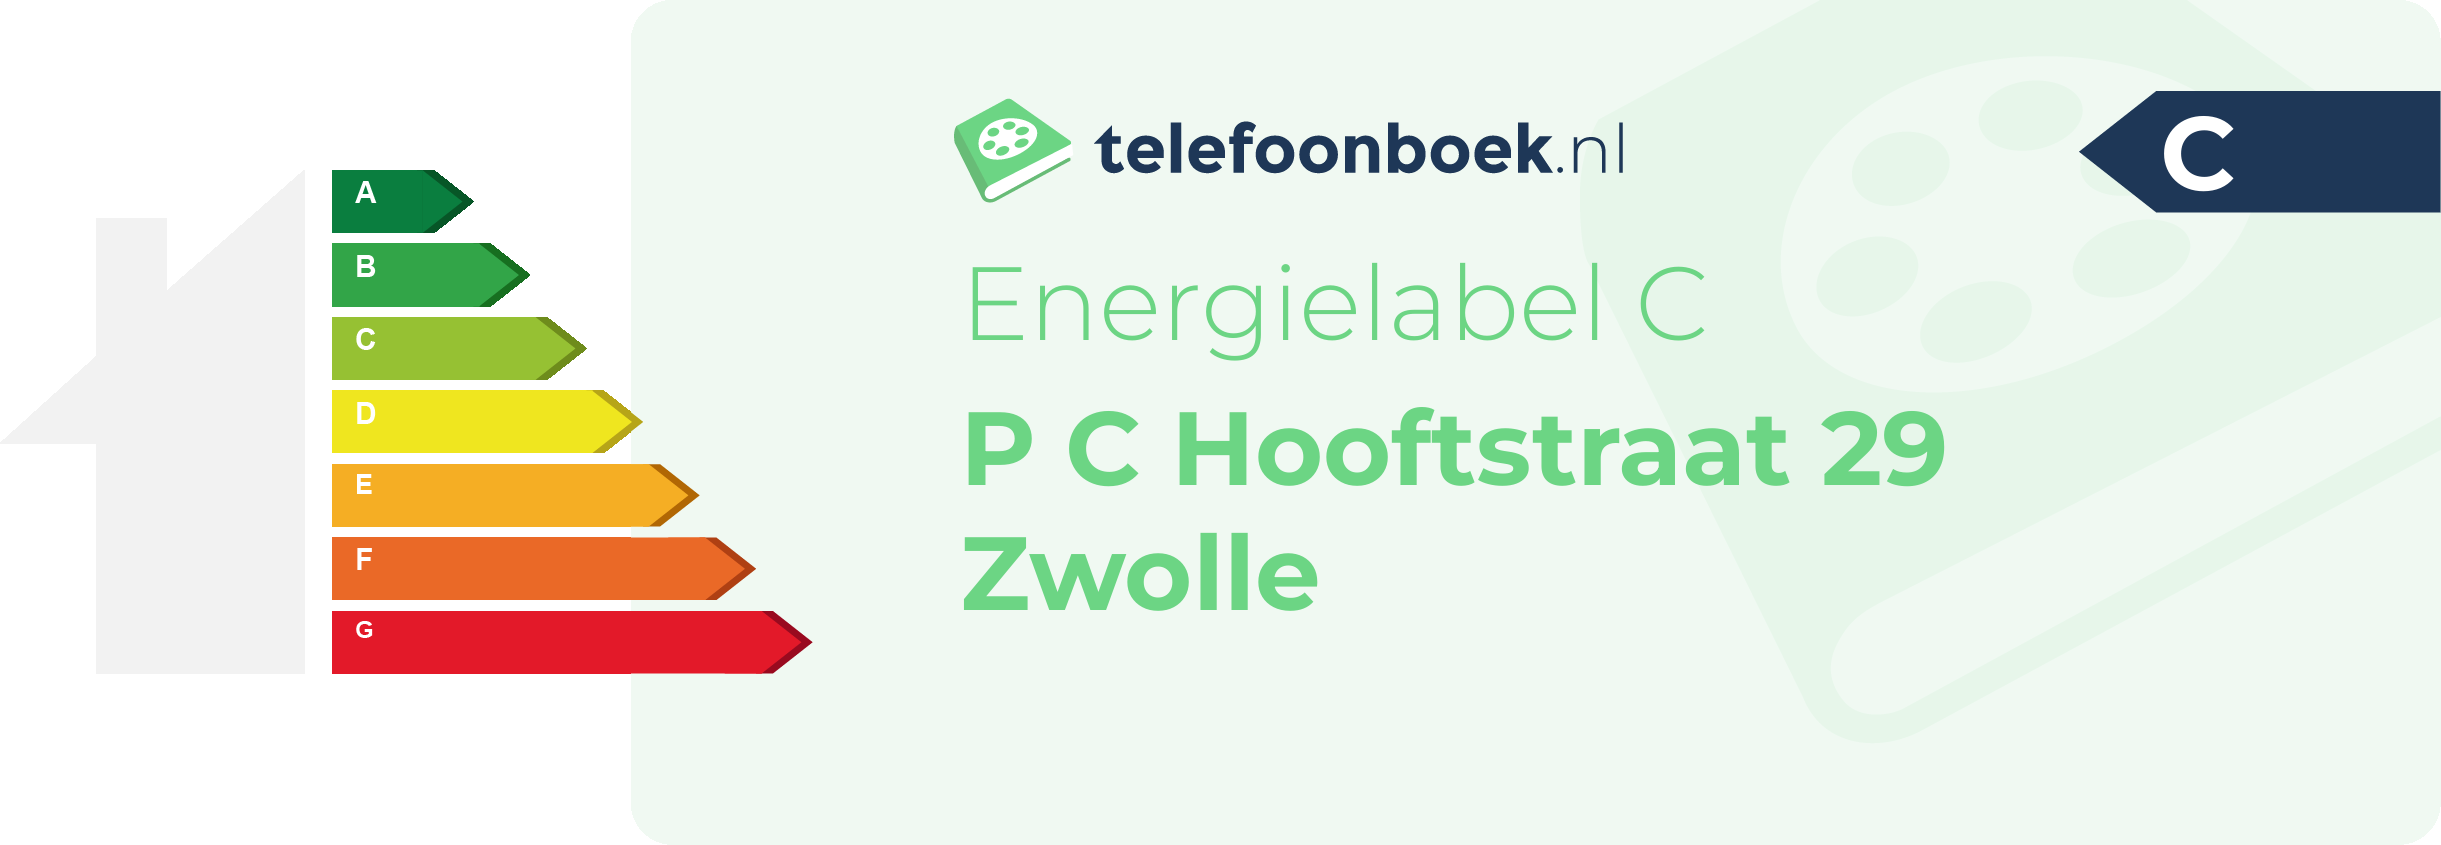 Energielabel P C Hooftstraat 29 Zwolle